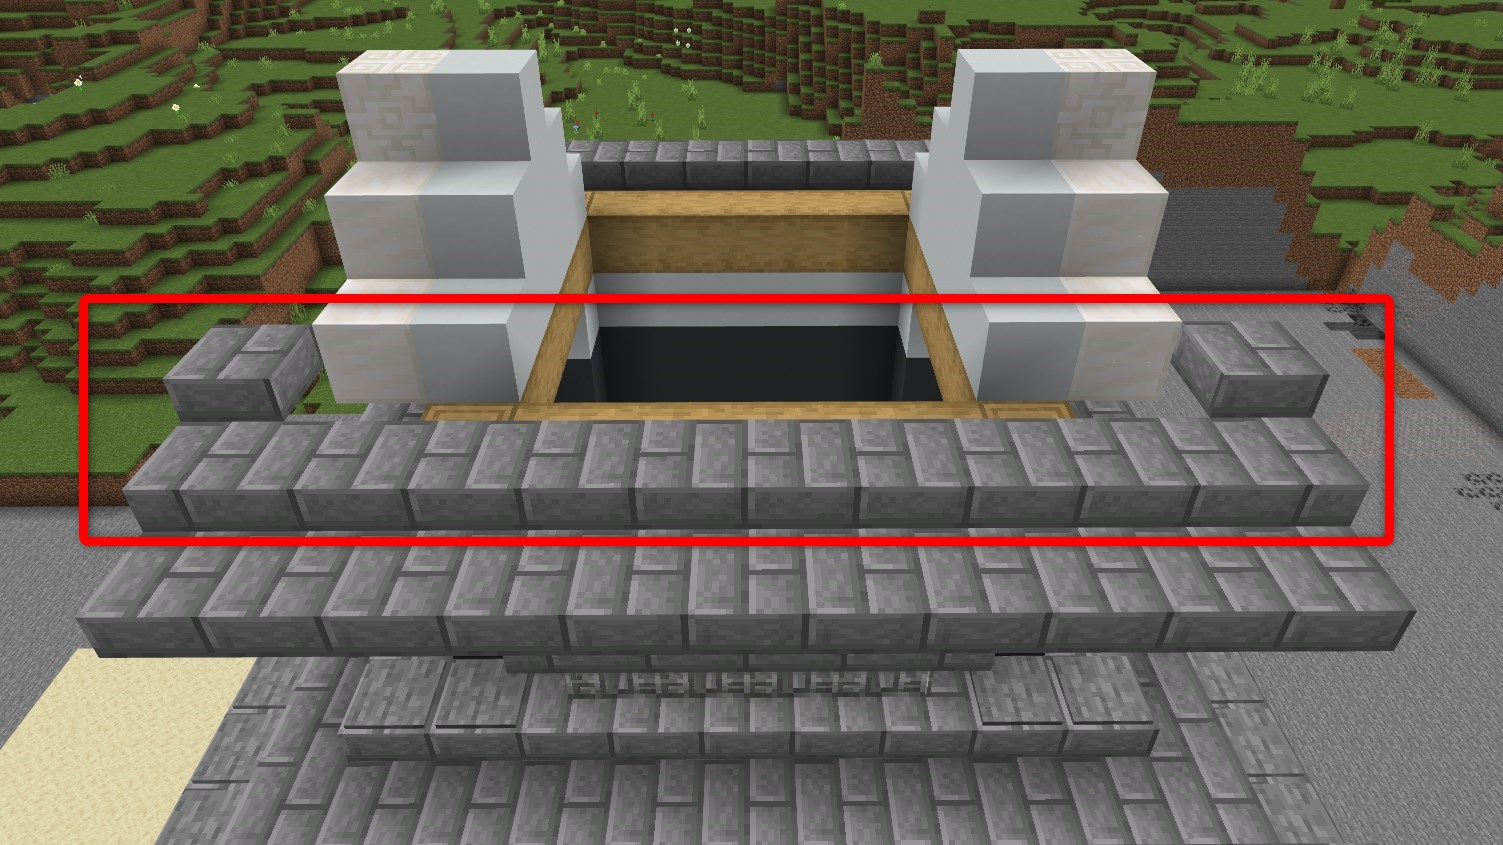 「石レンガのハーフブロック」を11個設置して、両端に1個ずつ「石レンガのハーフブロック」を1段上に設置